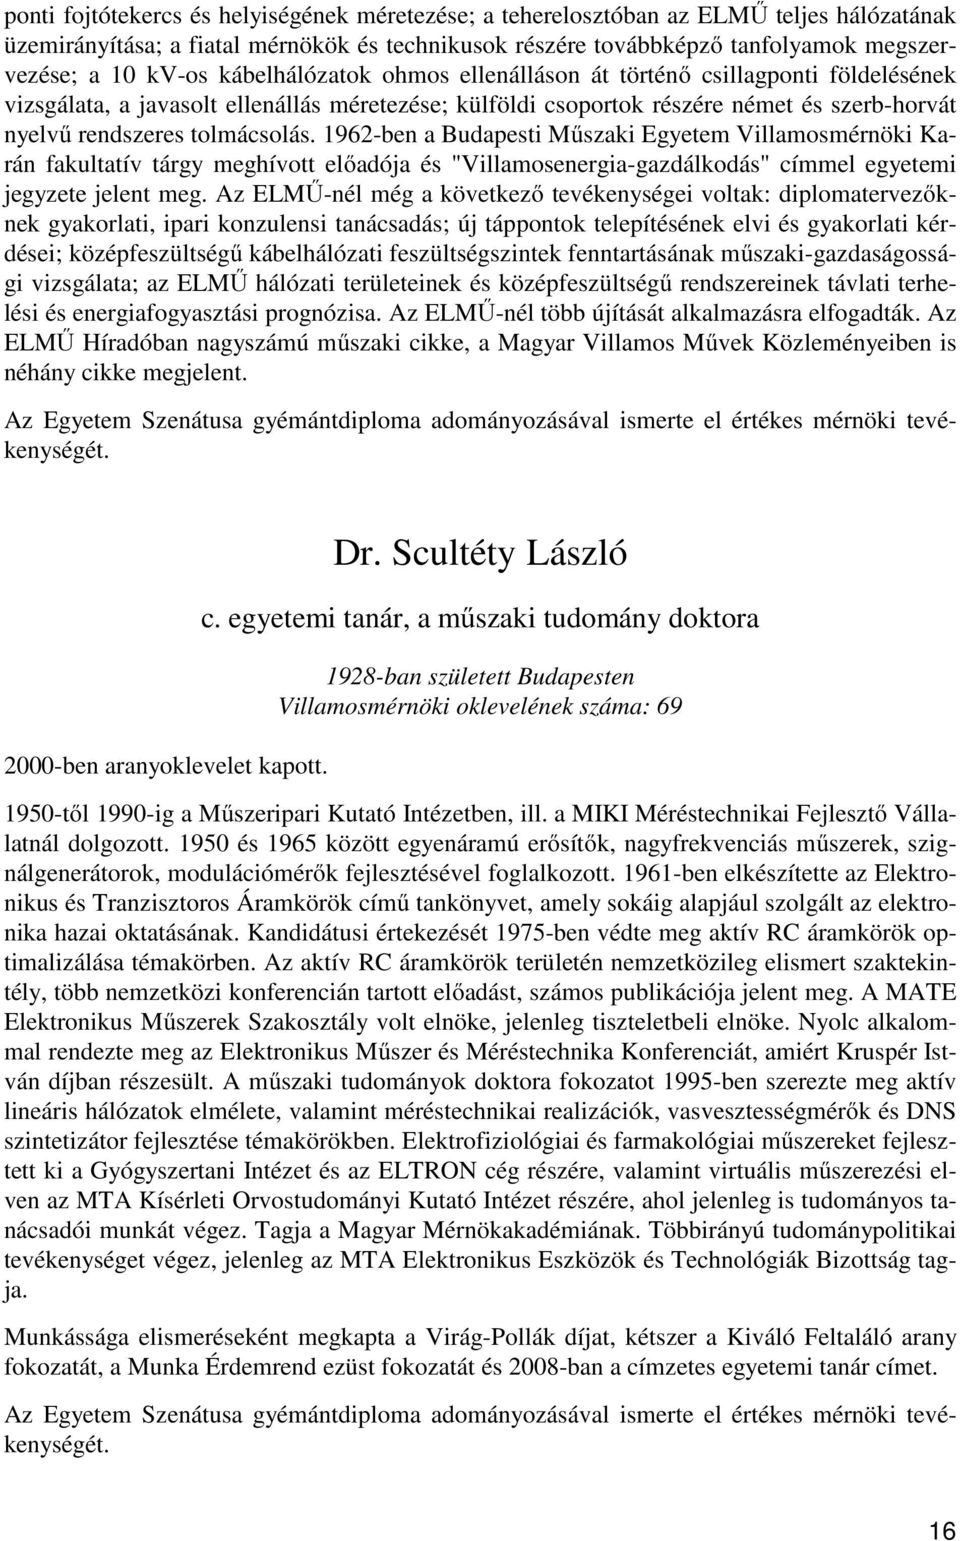 1962-ben a Budapesti Műszaki Egyetem Villamosmérnöki Karán fakultatív tárgy meghívott előadója és "Villamosenergia-gazdálkodás" címmel egyetemi jegyzete jelent meg.